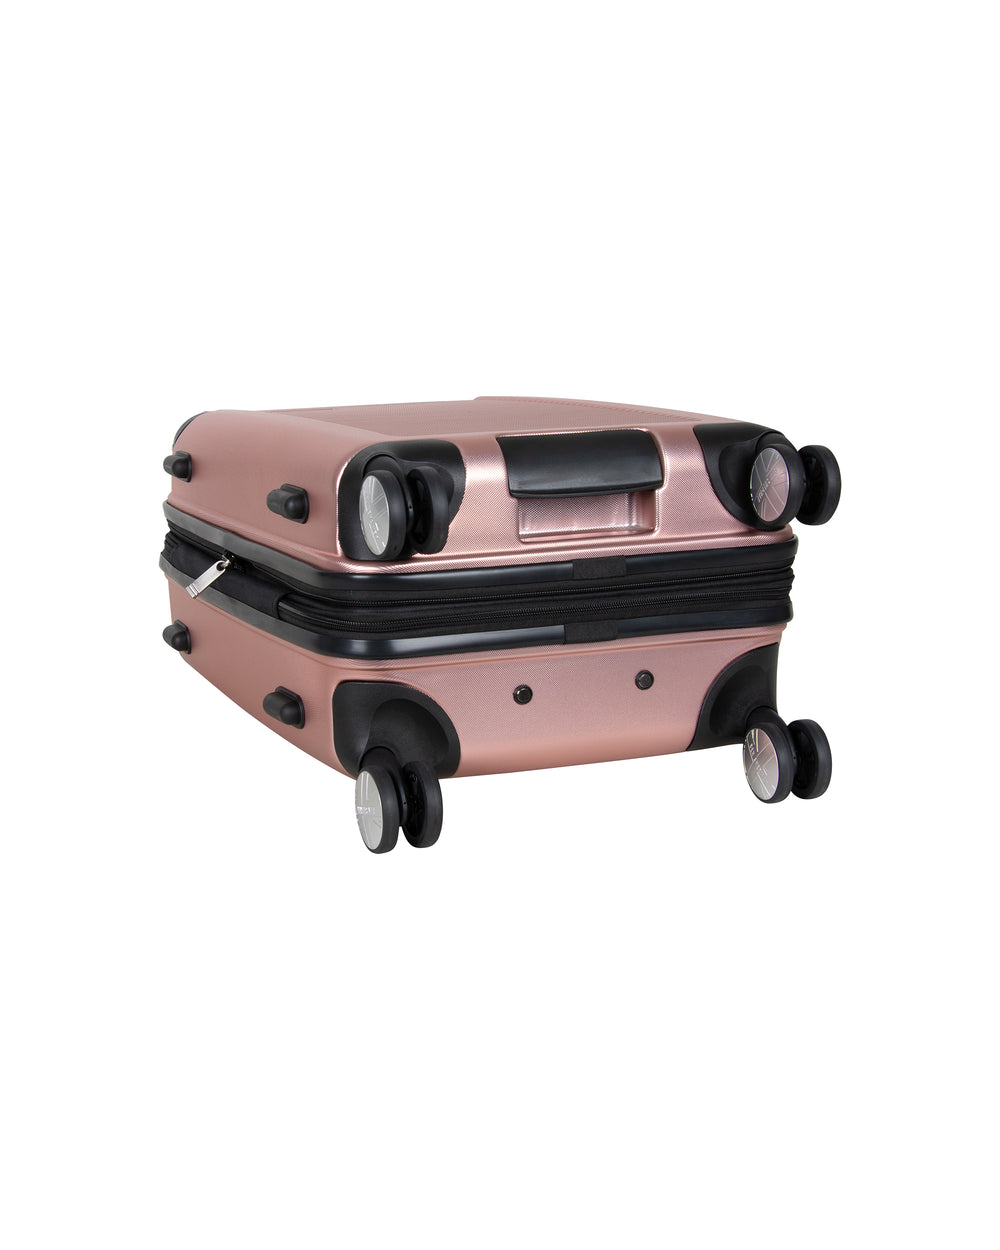 Norwich 2-Piece Hardside Expandable Luggage Set - Rose Gold